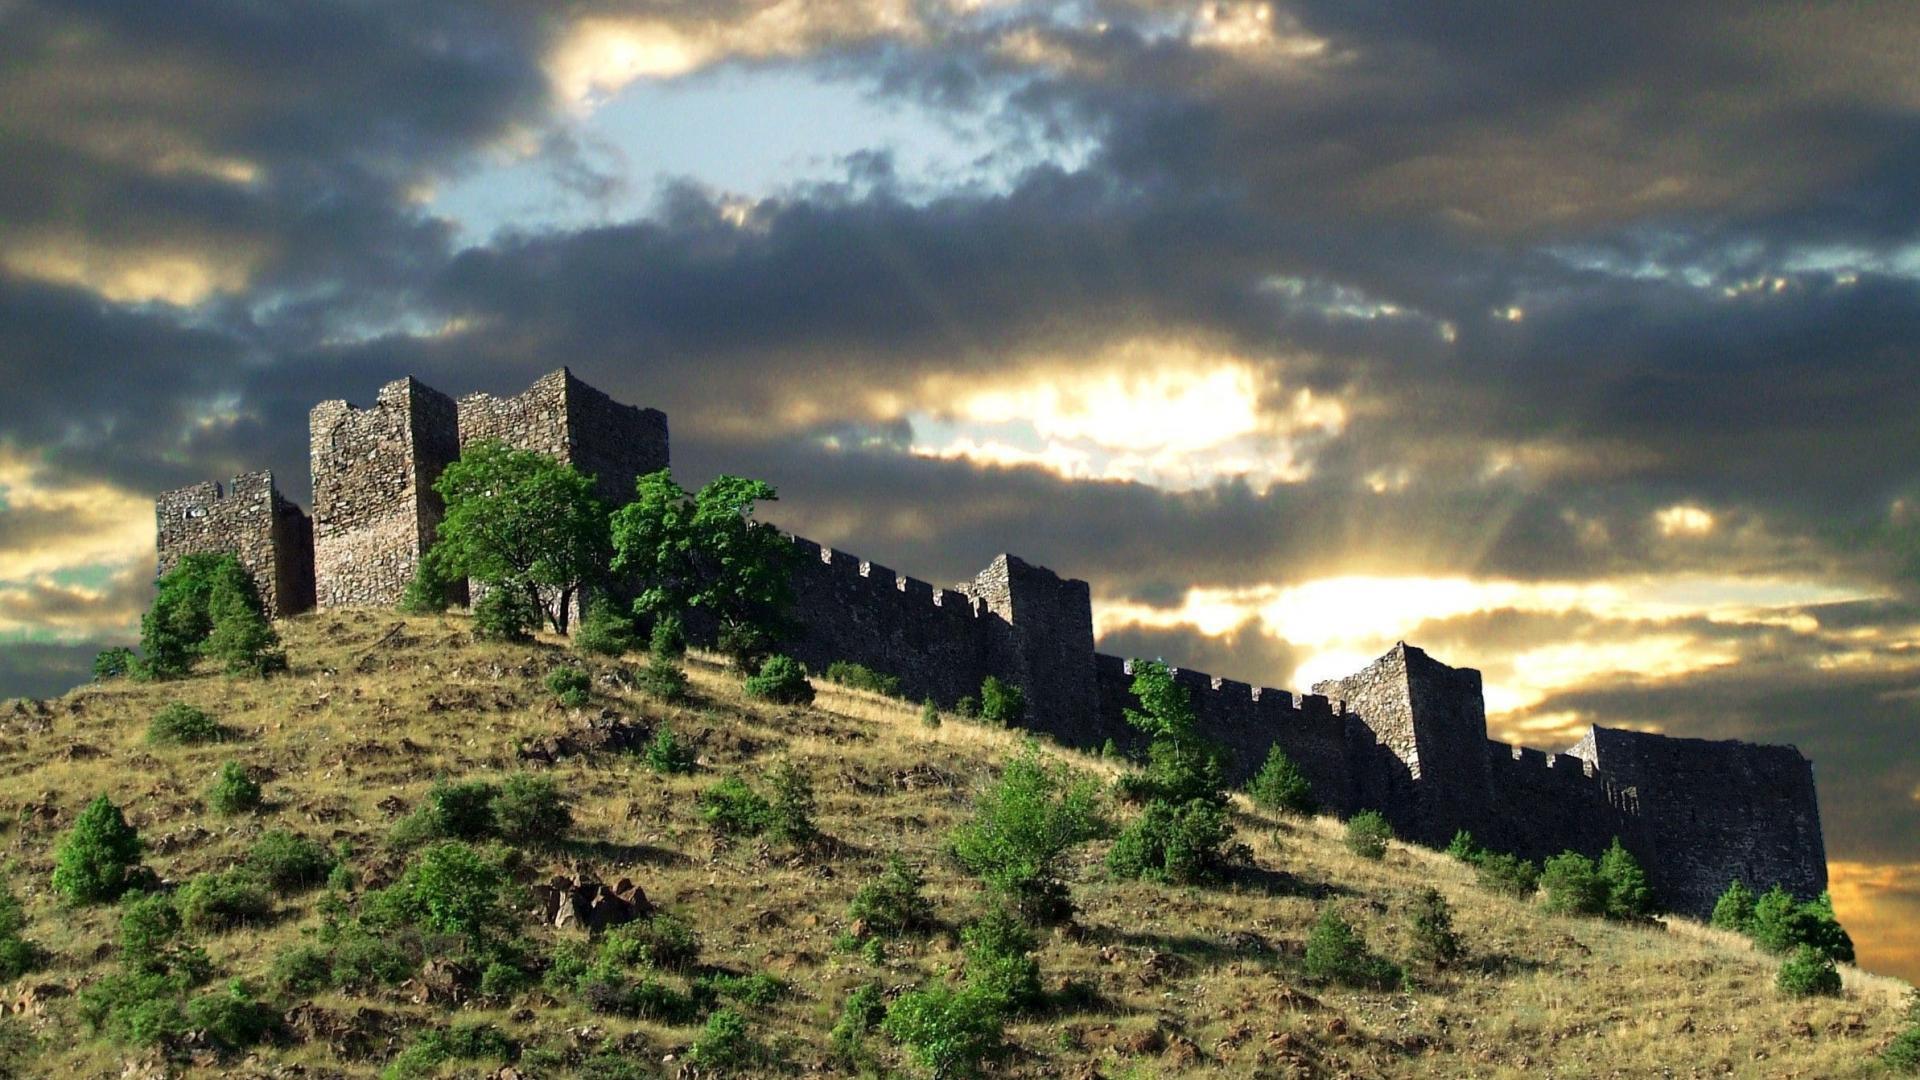 HD Castle On Hill In Kralijevo Serbia Wallpaper. Download Free